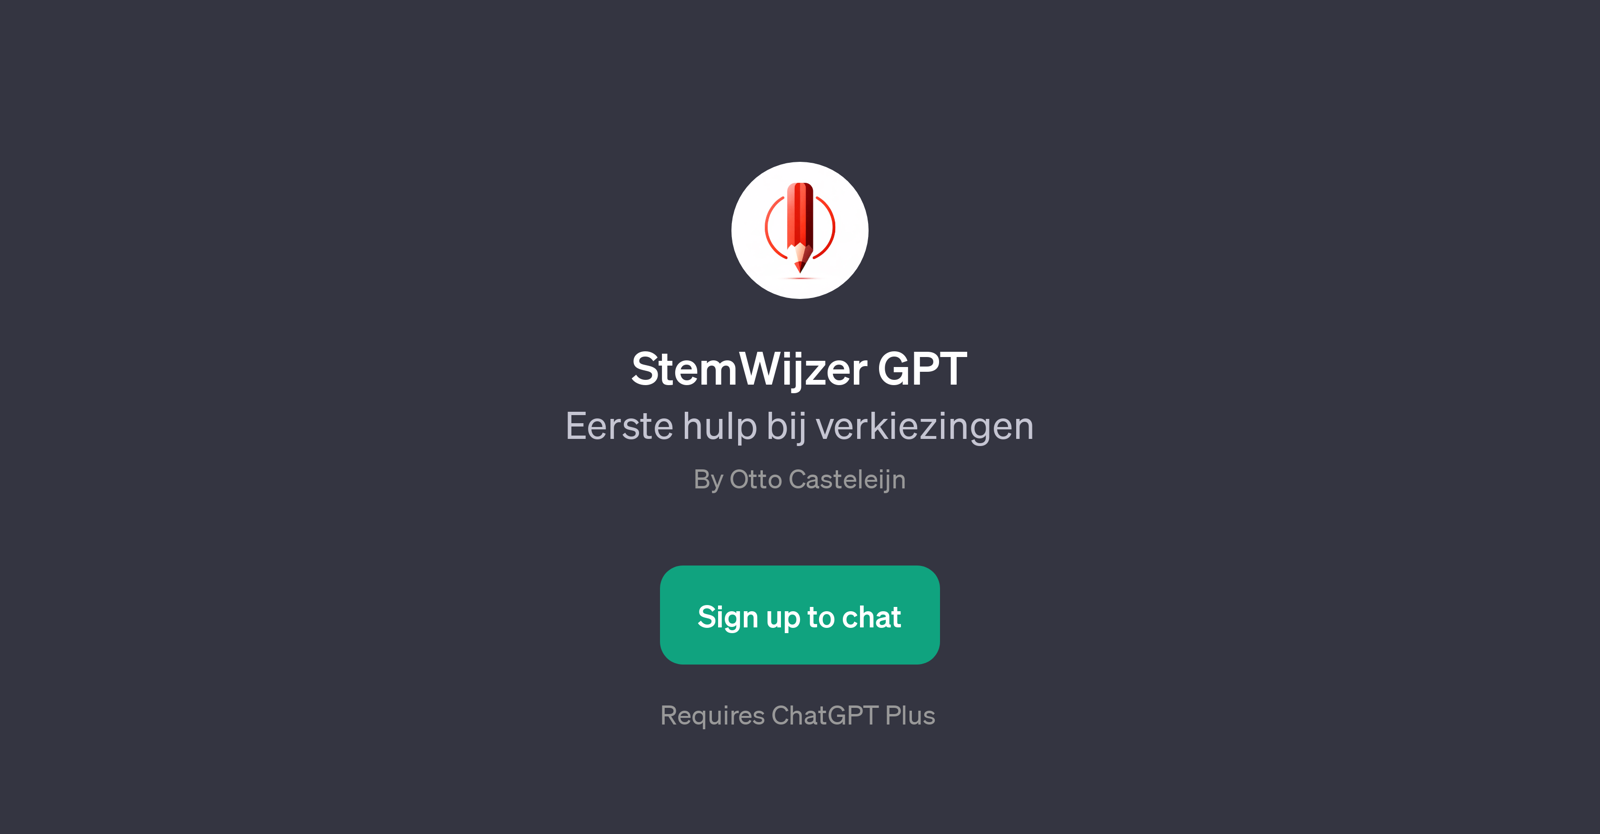 StemWijzer GPT website